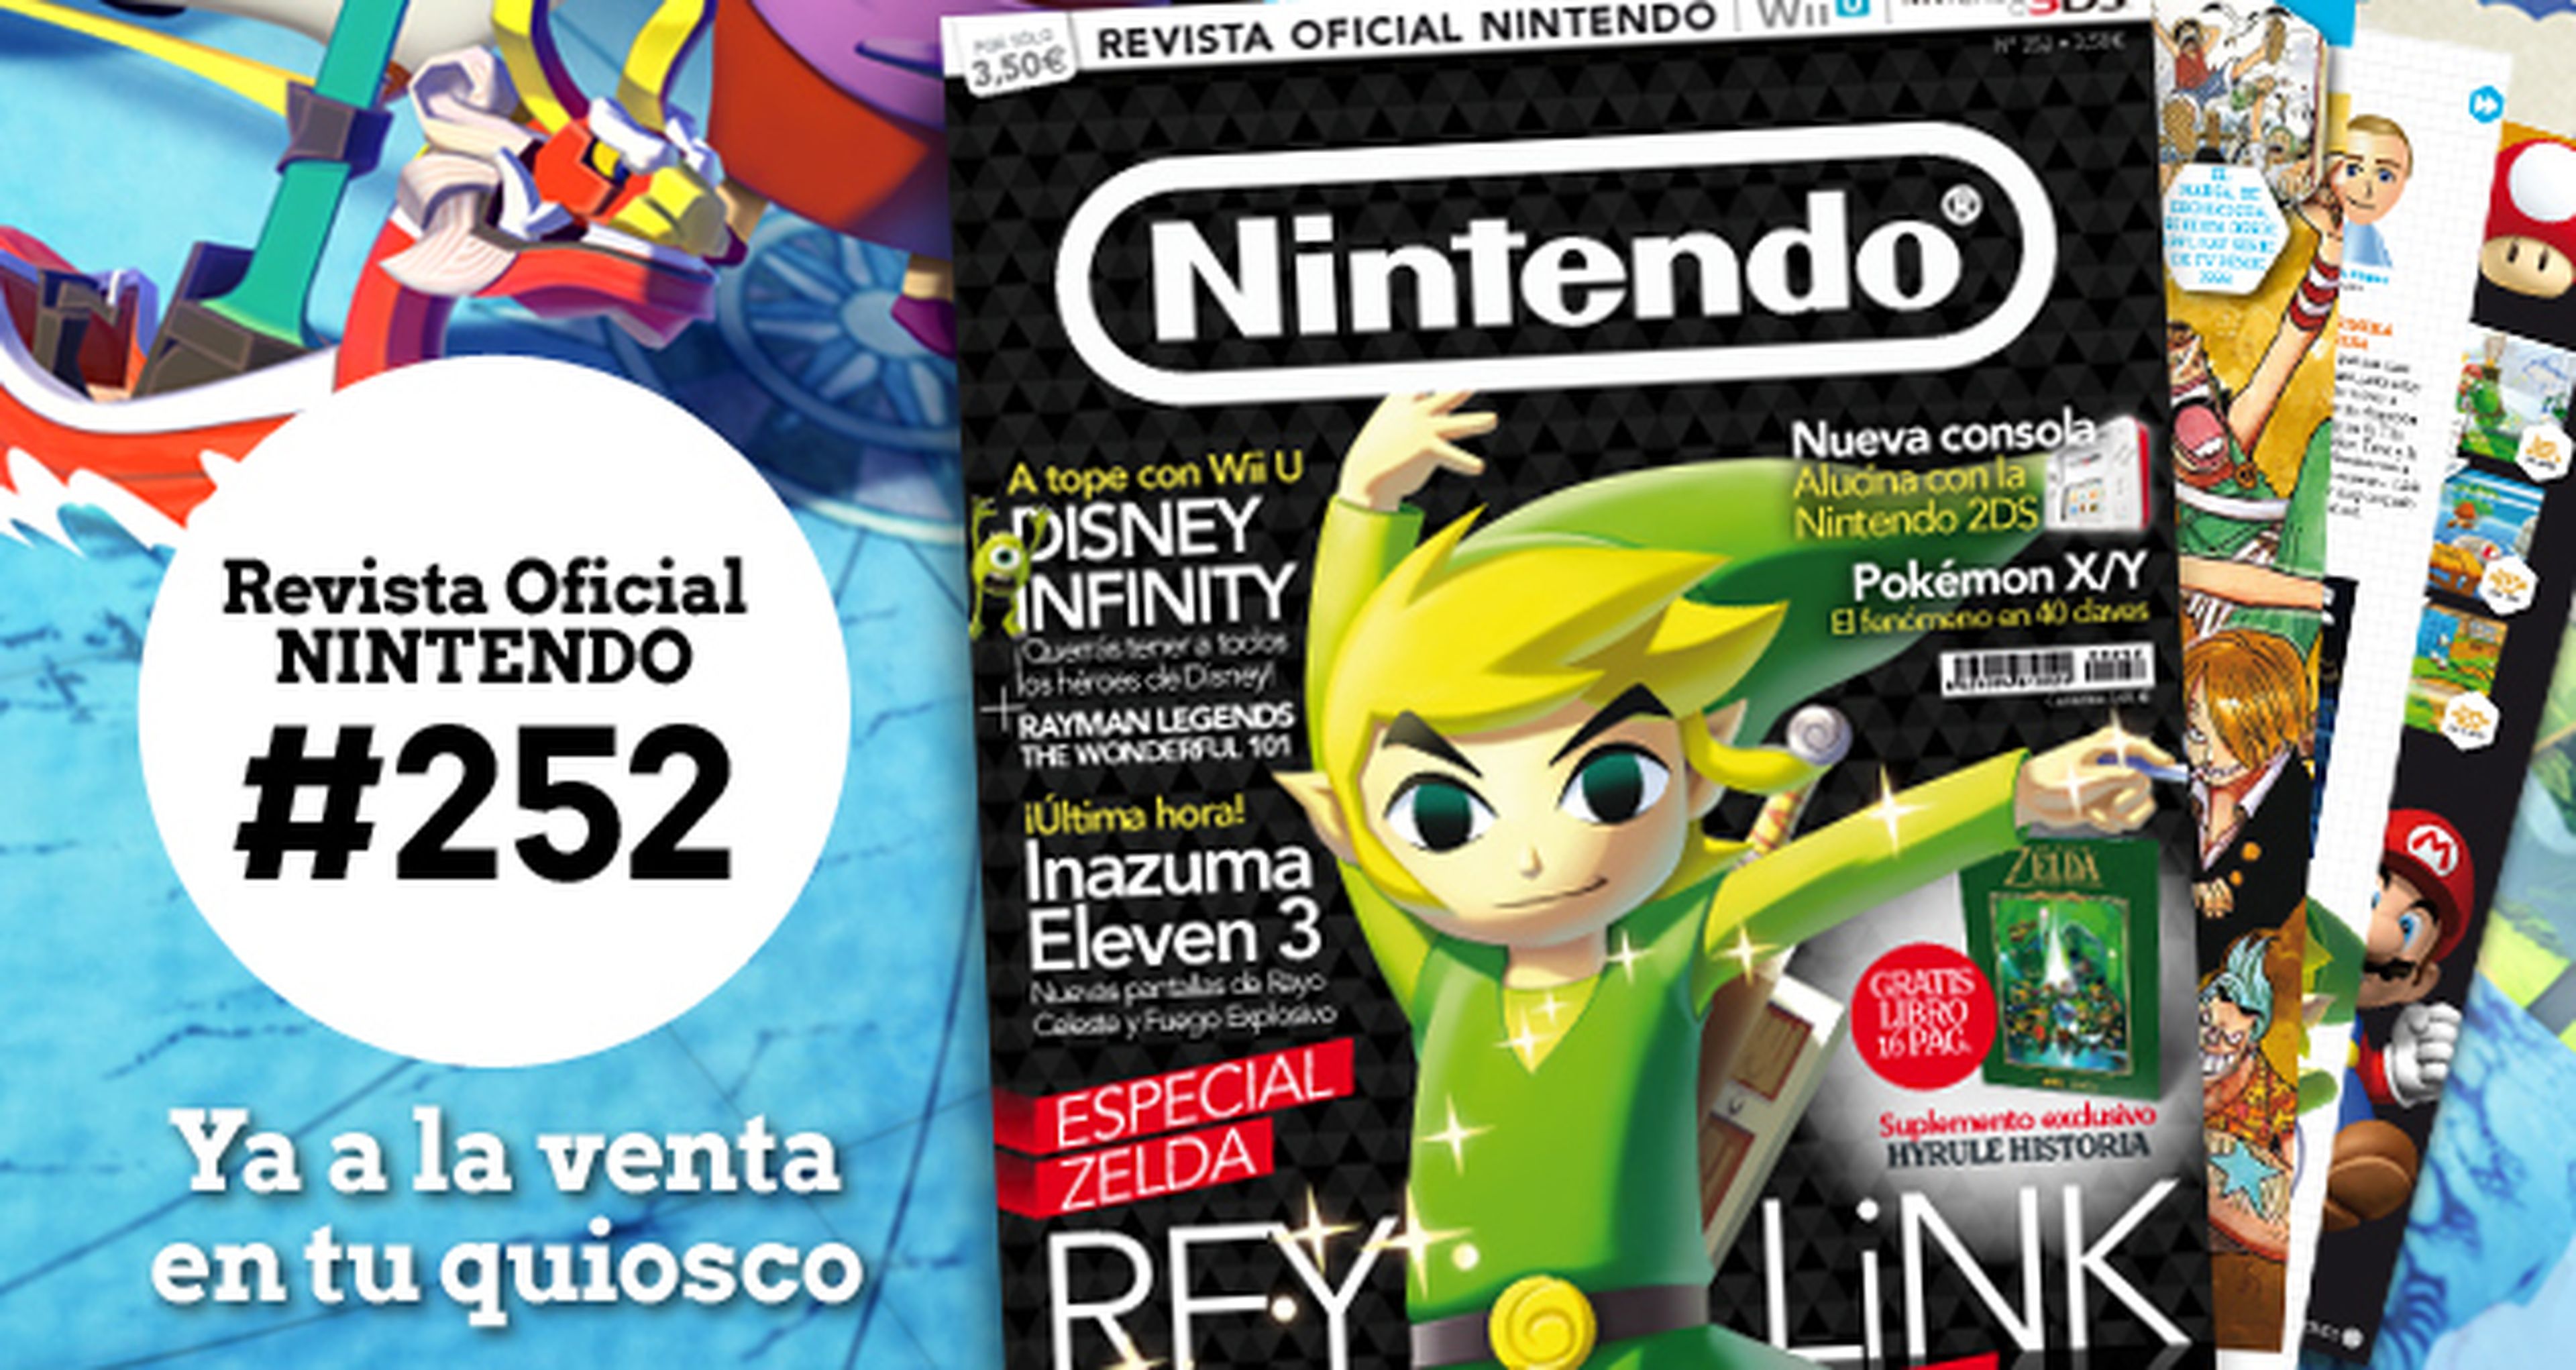 Revista Oficial Nintendo nº 252 ya a la venta